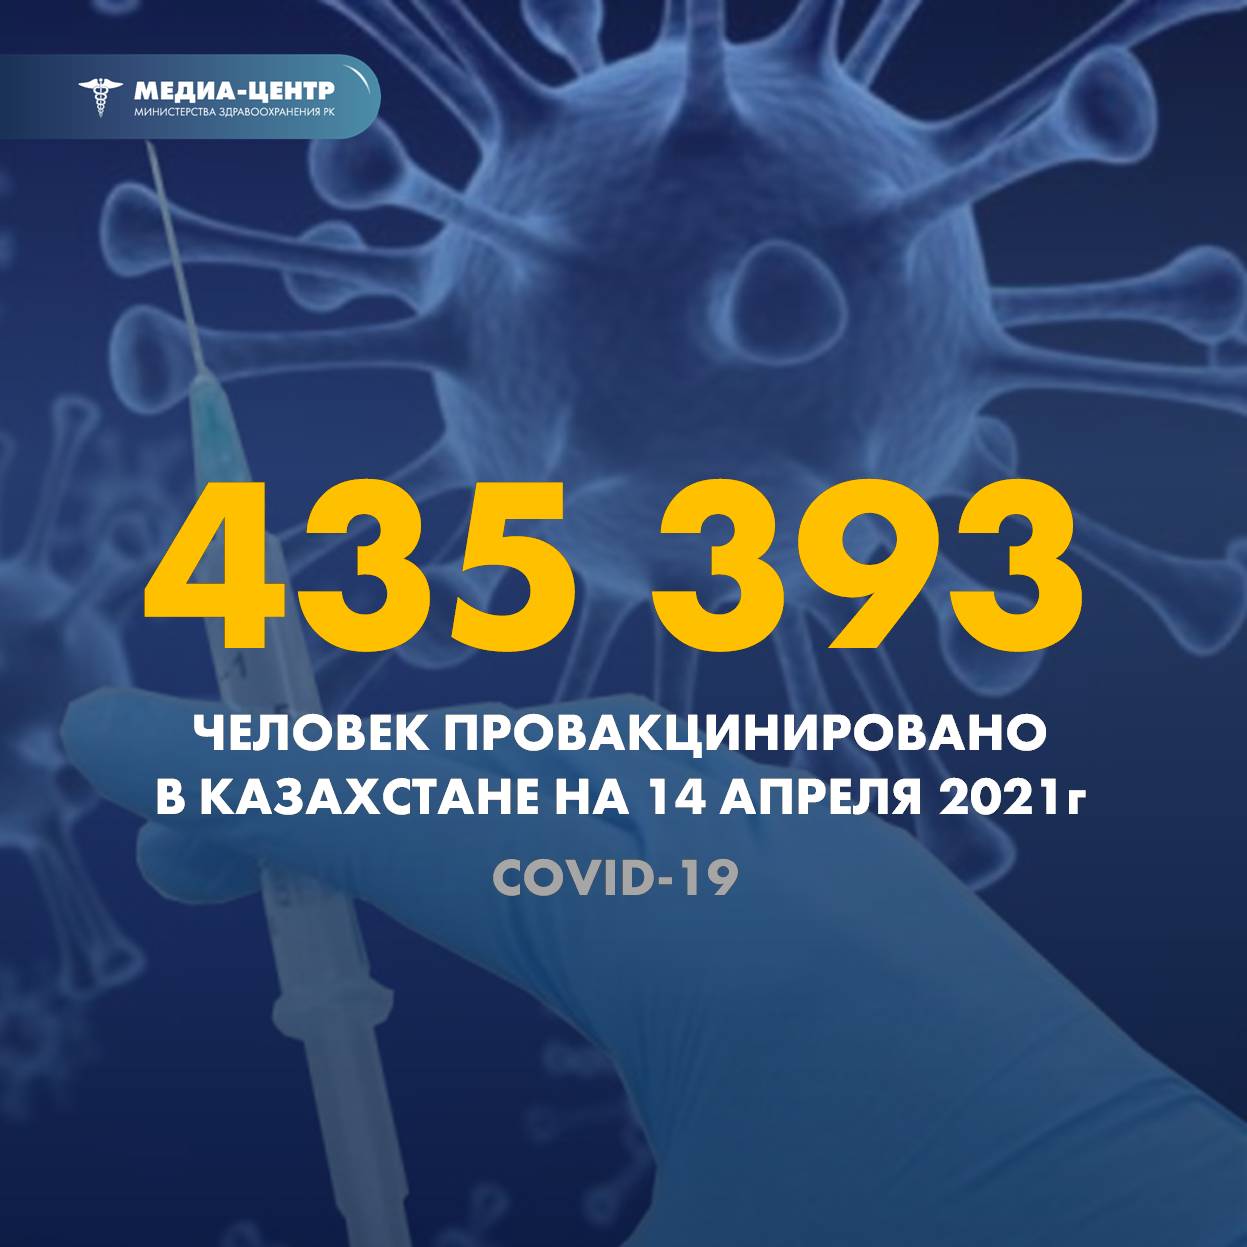 435 393 человек провакцинировано в Казахстане на 14 апреля 2021 г